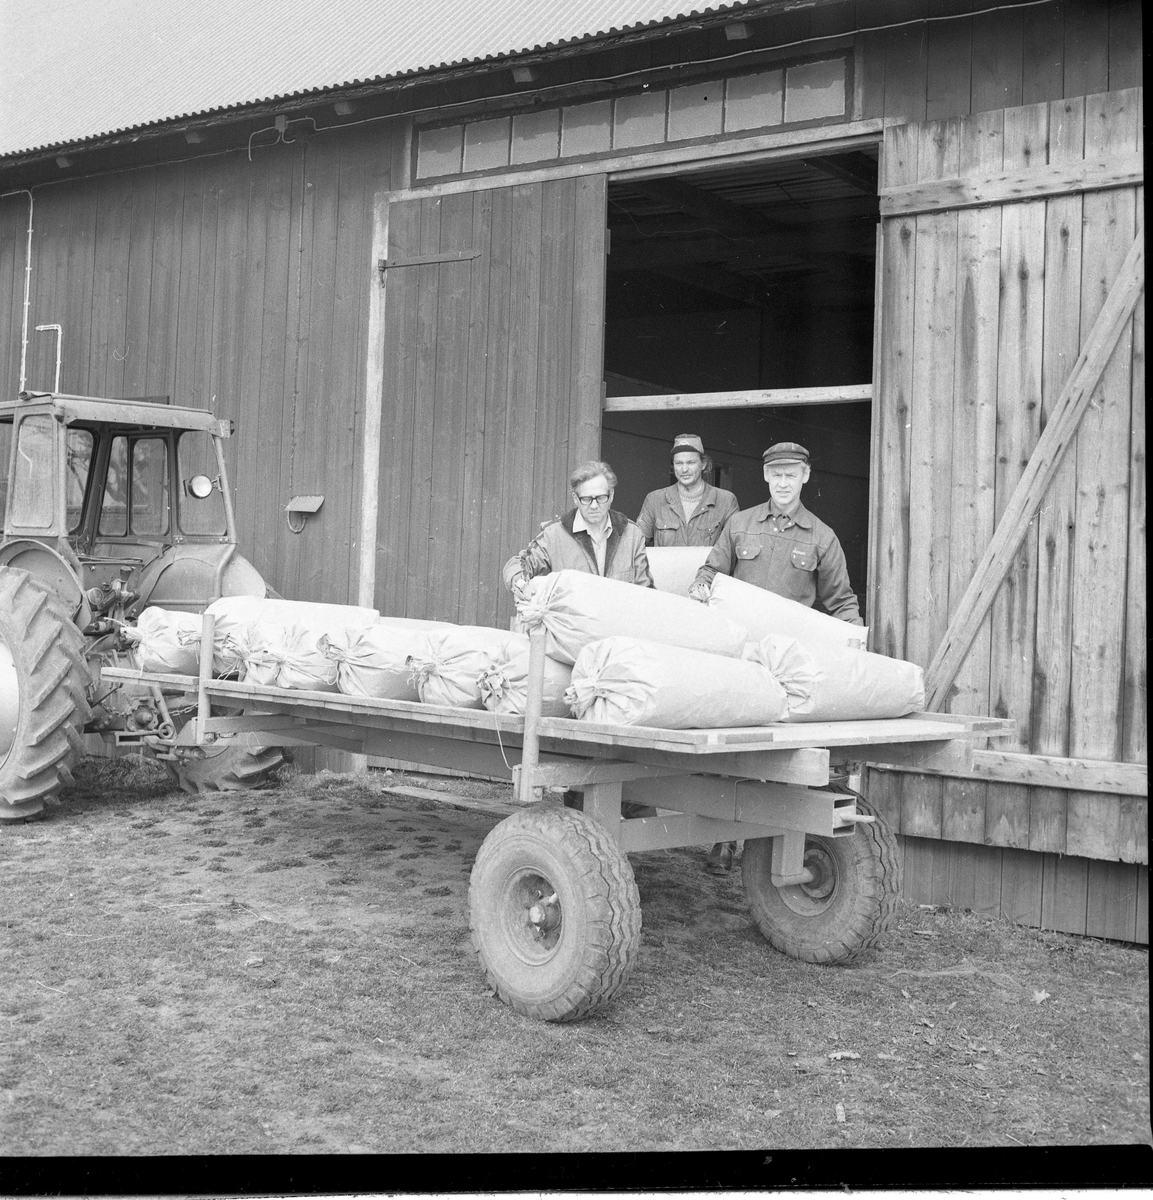 En flakvagn med säckar kopplad till en trakt står utanför en ekonomibyggnad, tre män lastar på mer säckar - troligen med müsli.